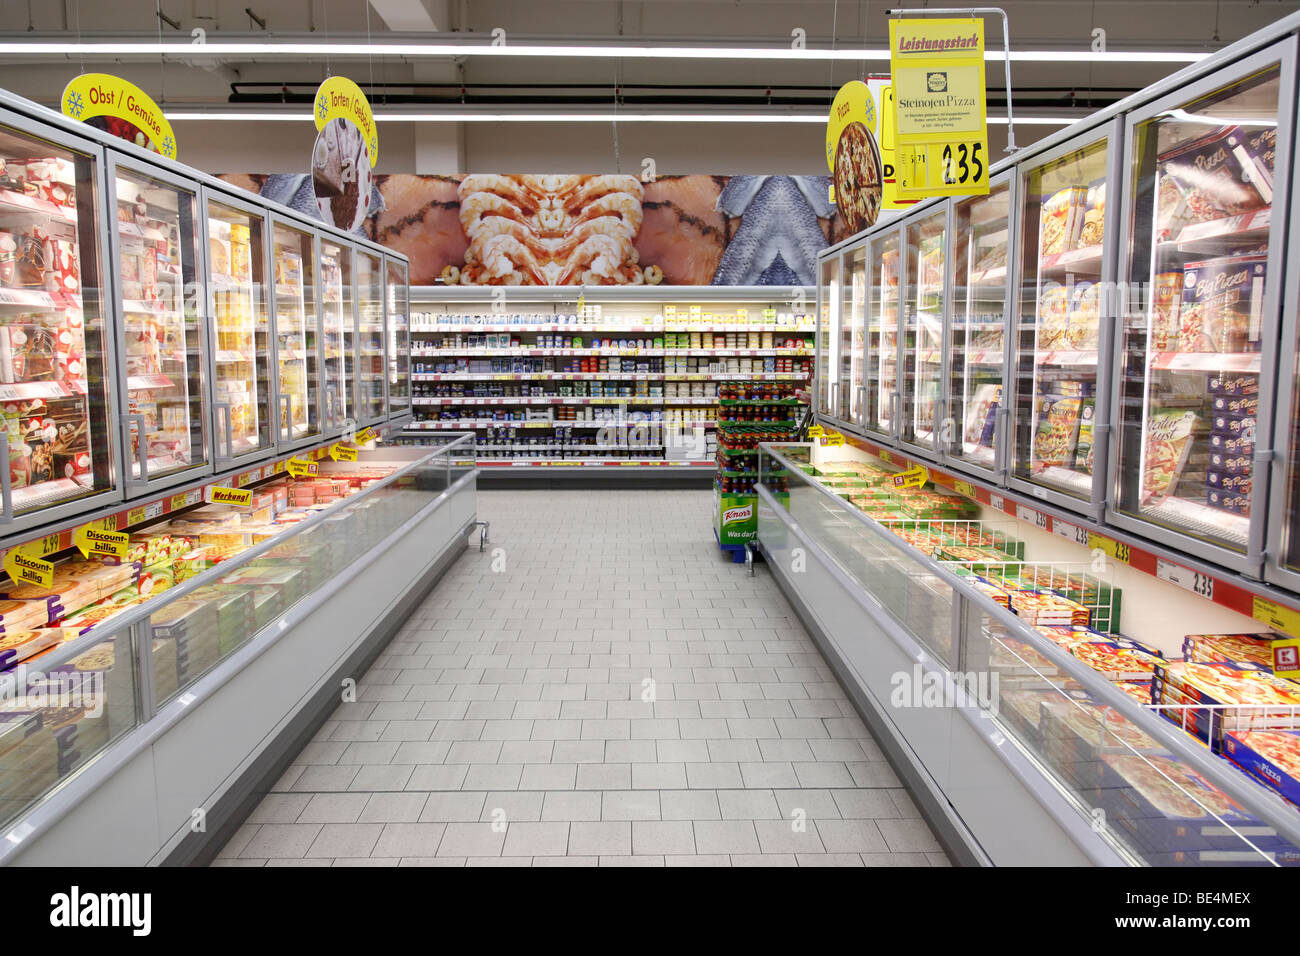 Tiefkühltruhe in einem Supermarkt Stockfotografie - Alamy